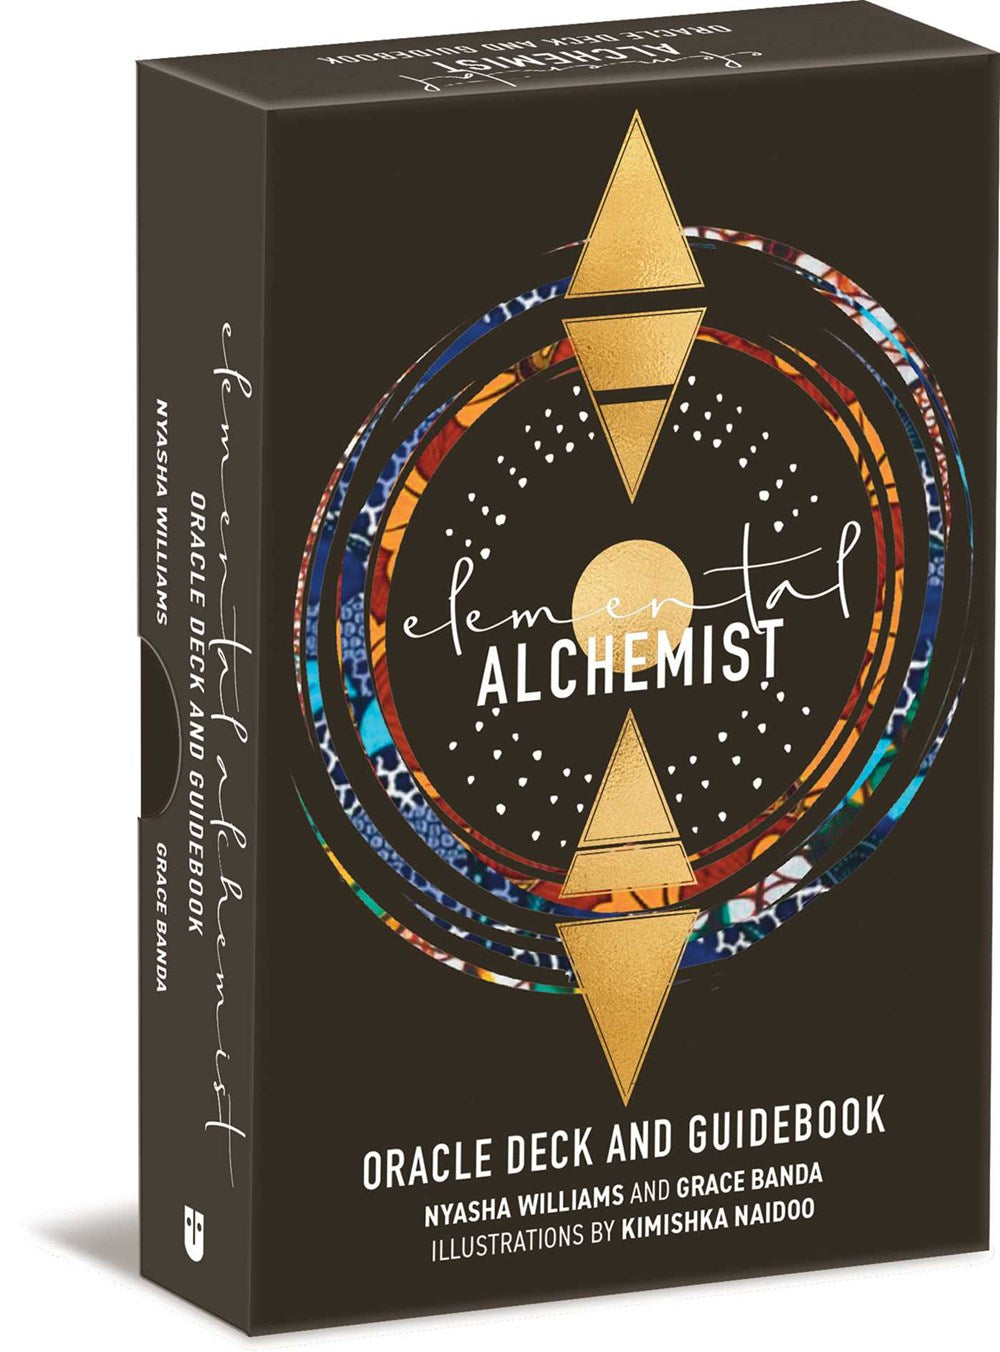 Elemental Alchemist Oracle Deck and Guidebook